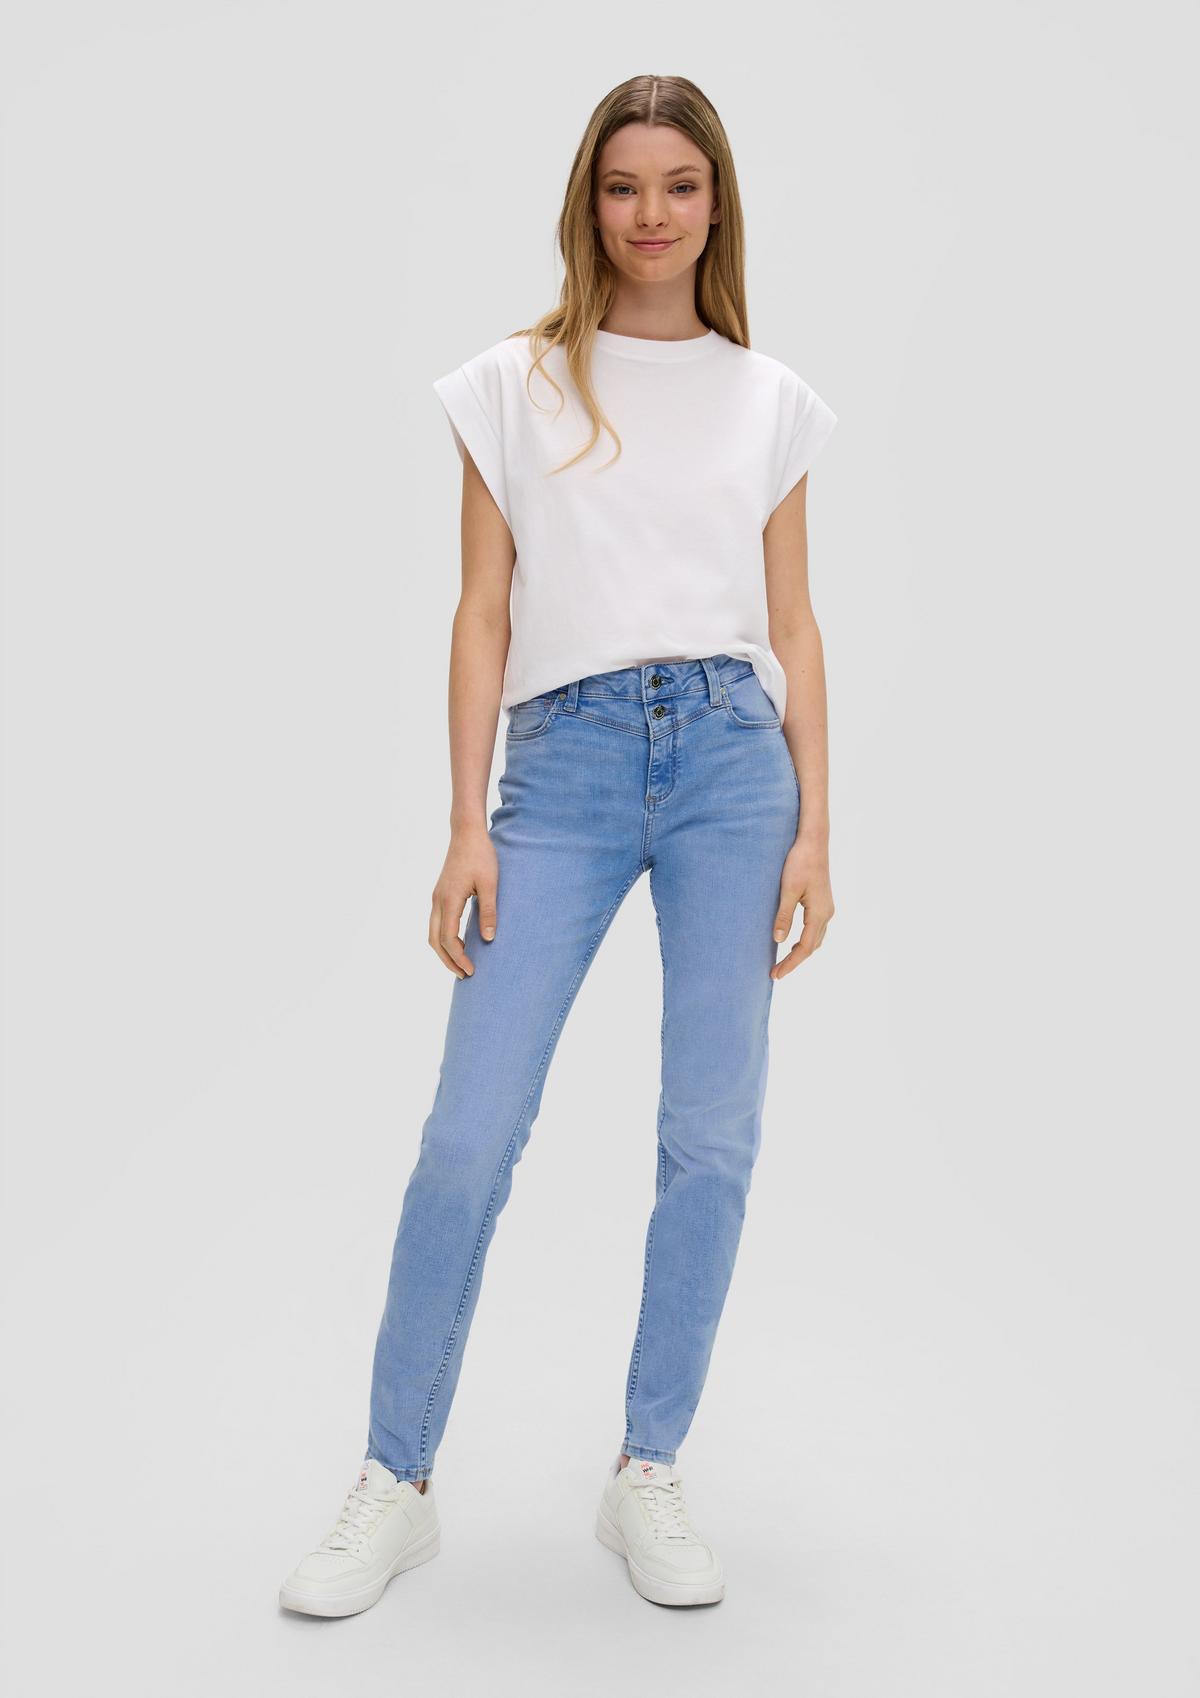 s.Oliver Jeans hlače Sadie/kroj Skinny Fit/Mid Rise/Skinny Leg/našitek